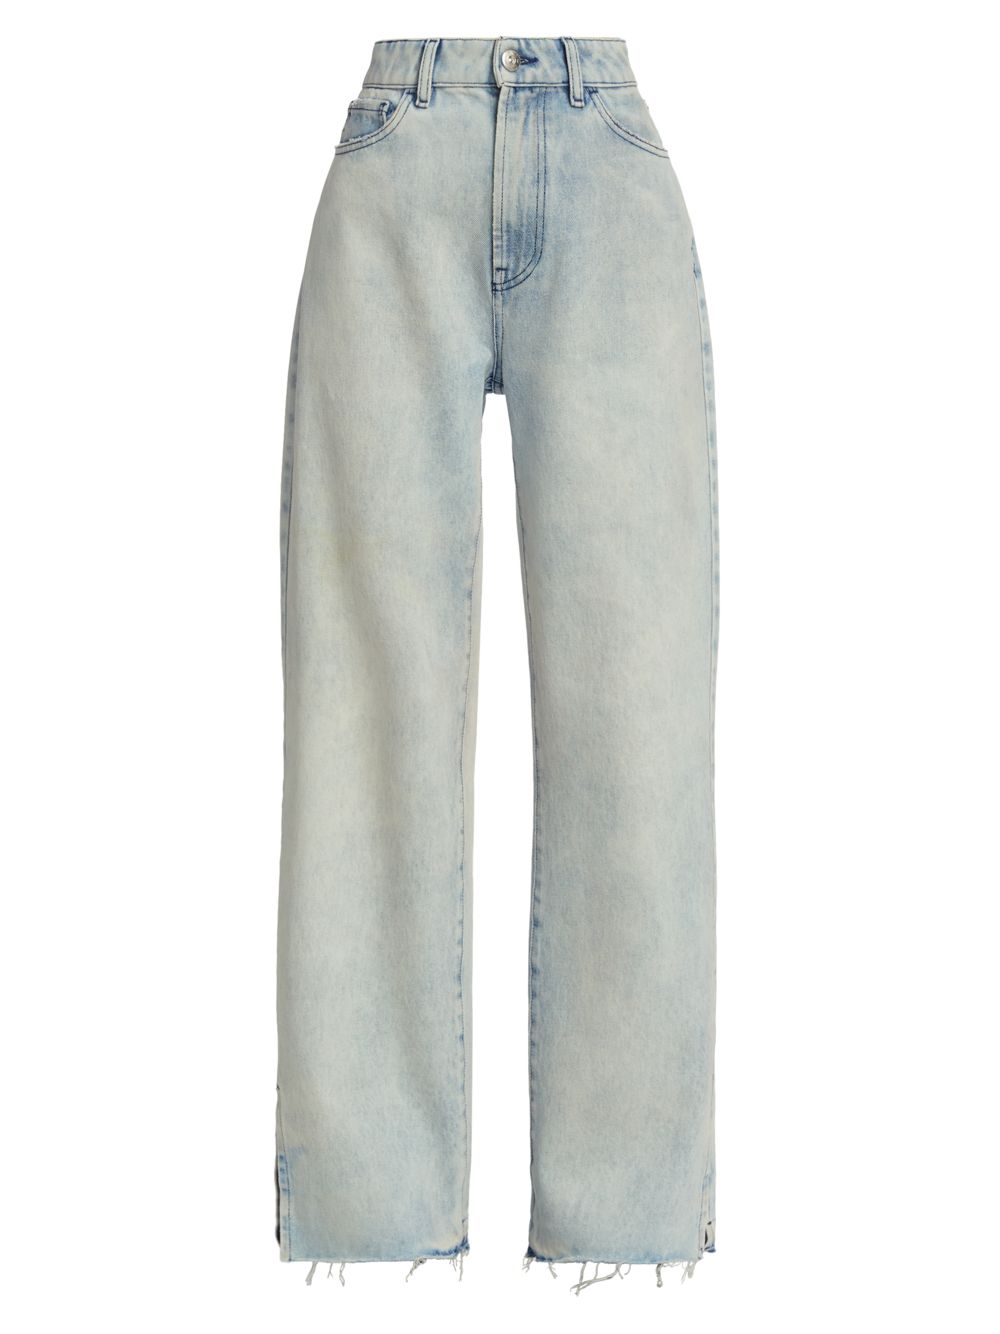 Джинсы прямого кроя Diana с высокой посадкой 3x1 джинсы прямого кроя ruth с высокой посадкой l agence цвет atwood blue